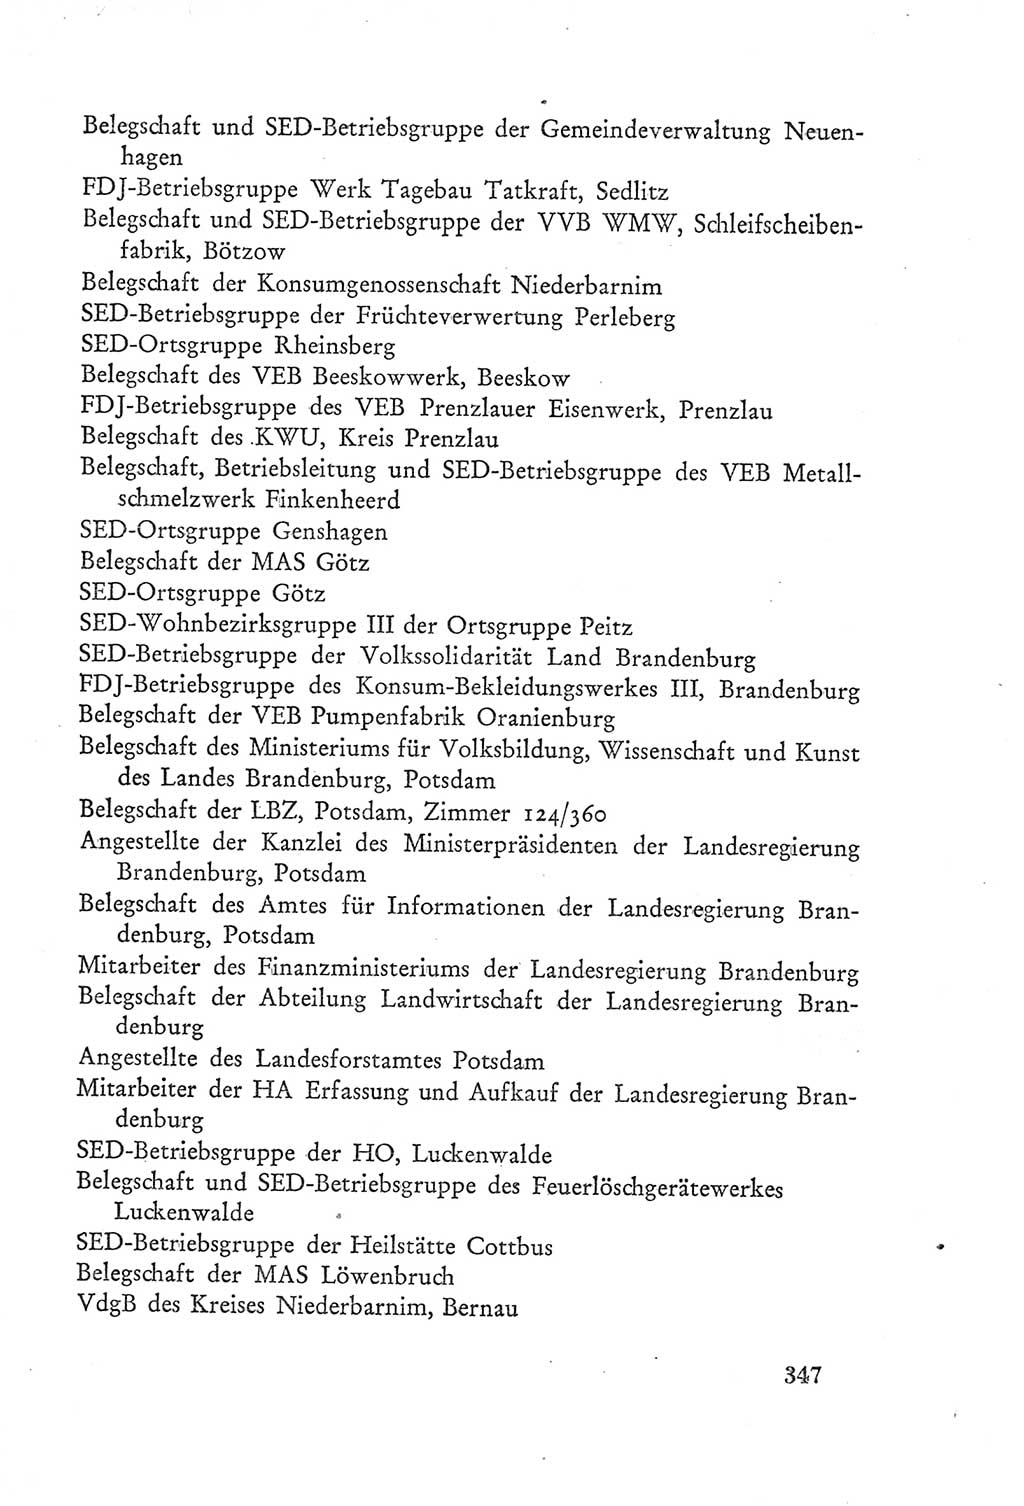 Protokoll der Verhandlungen des Ⅲ. Parteitages der Sozialistischen Einheitspartei Deutschlands (SED) [Deutsche Demokratische Republik (DDR)] 1950, Band 2, Seite 347 (Prot. Verh. Ⅲ. PT SED DDR 1950, Bd. 2, S. 347)